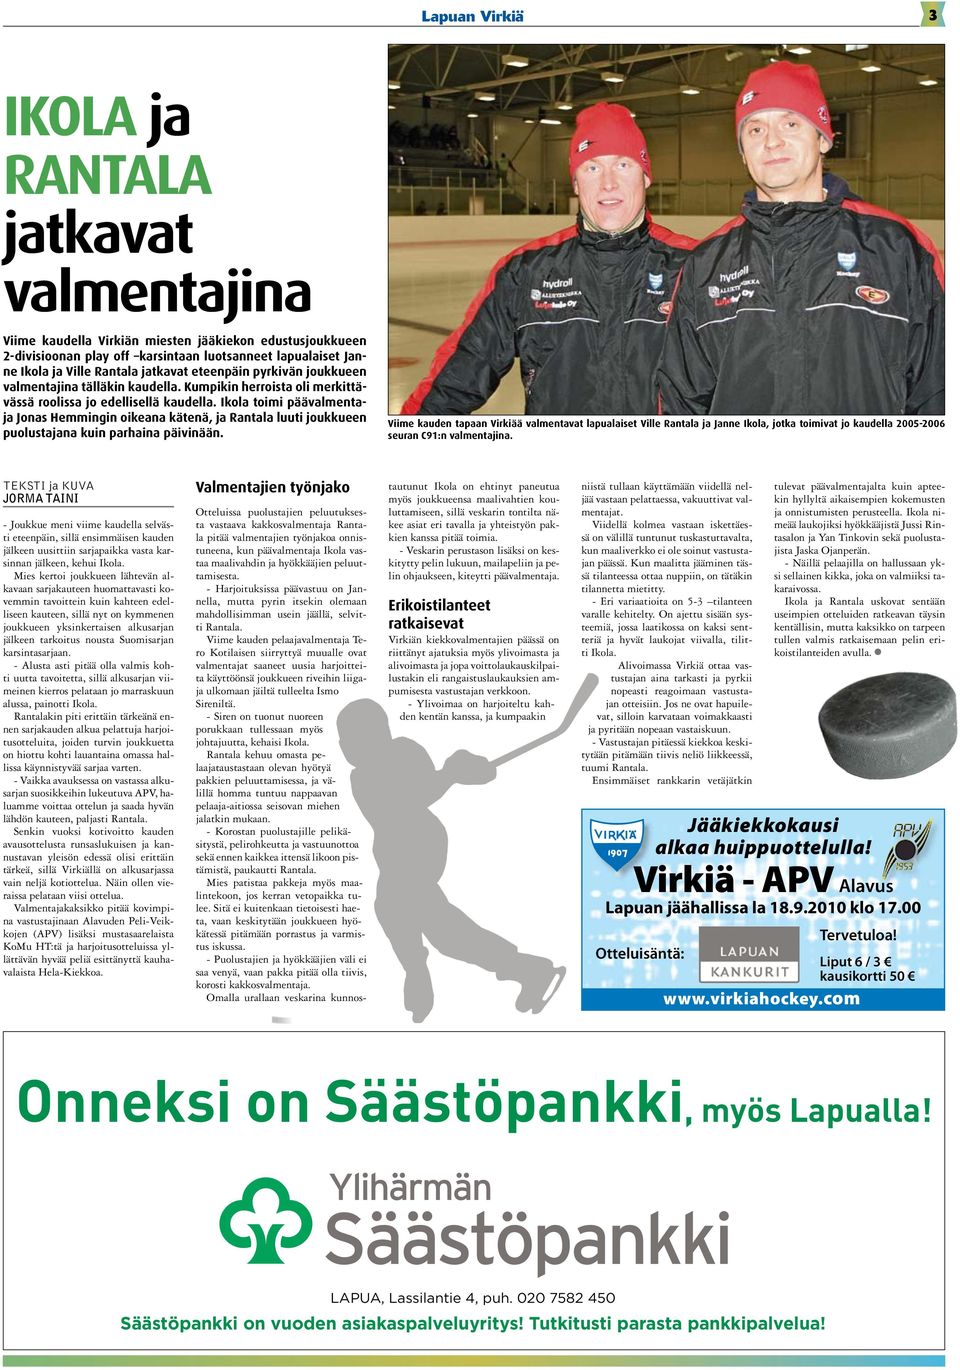 Ikola toimi päävalmentaja Jonas Hemmingin oikeana kätenä, ja Rantala luuti joukkueen puolustajana kuin parhaina päivinään.